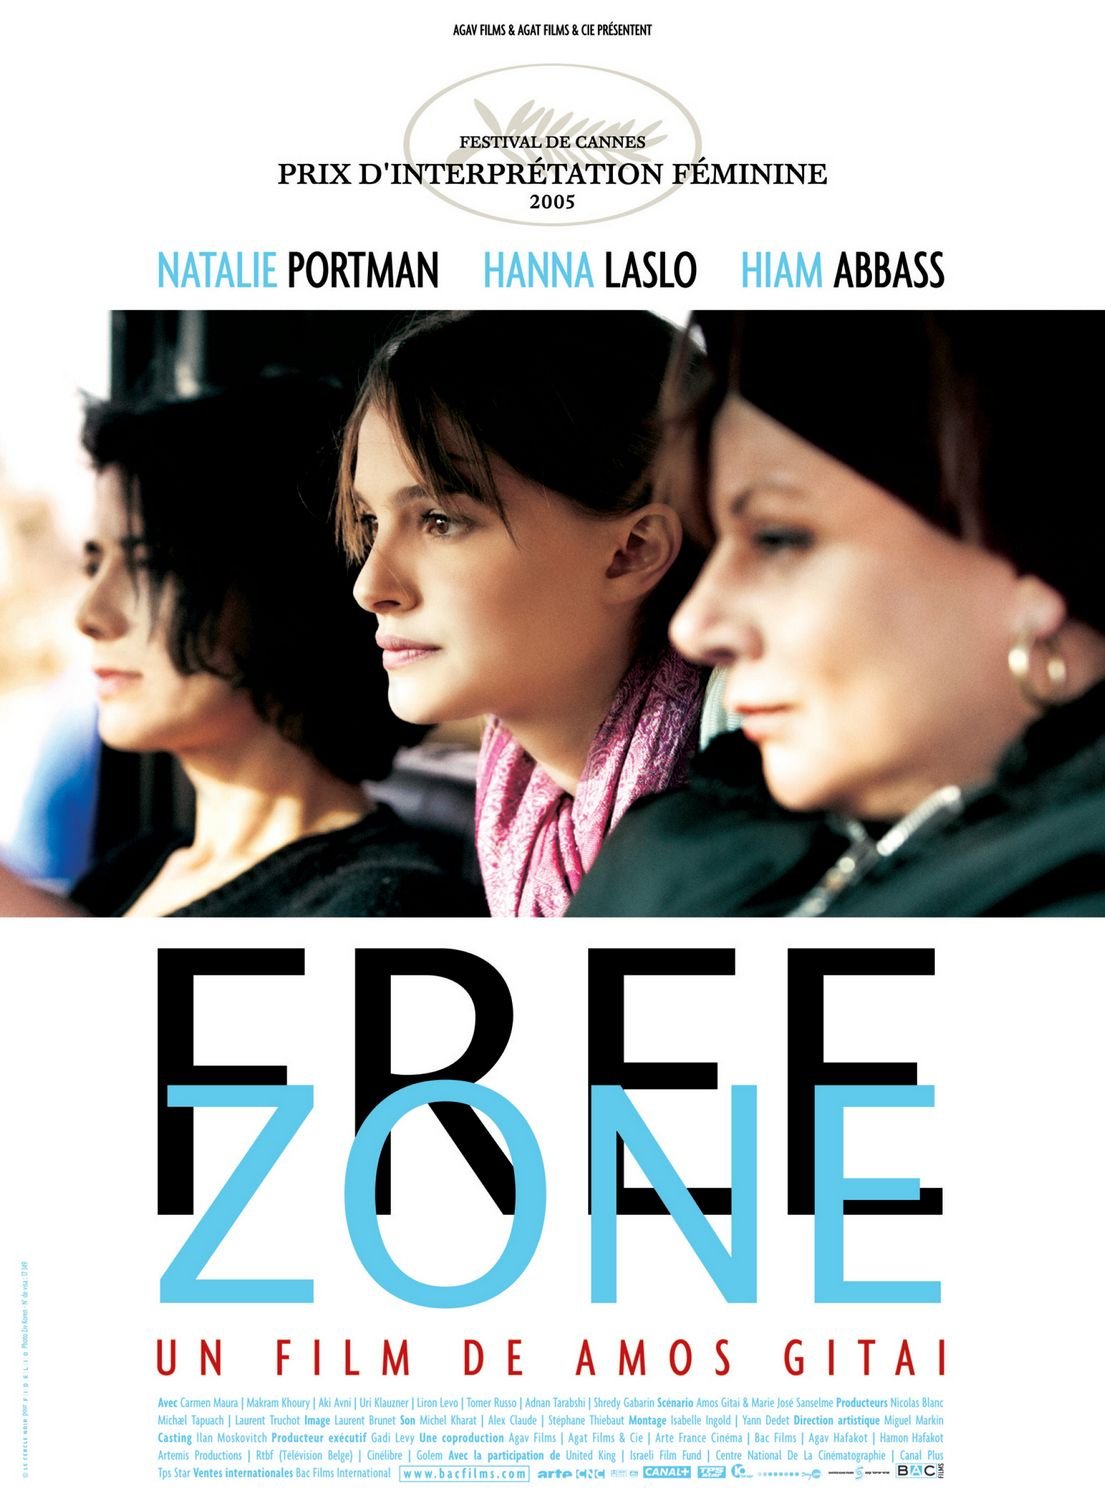 L'affiche du film Free Zone